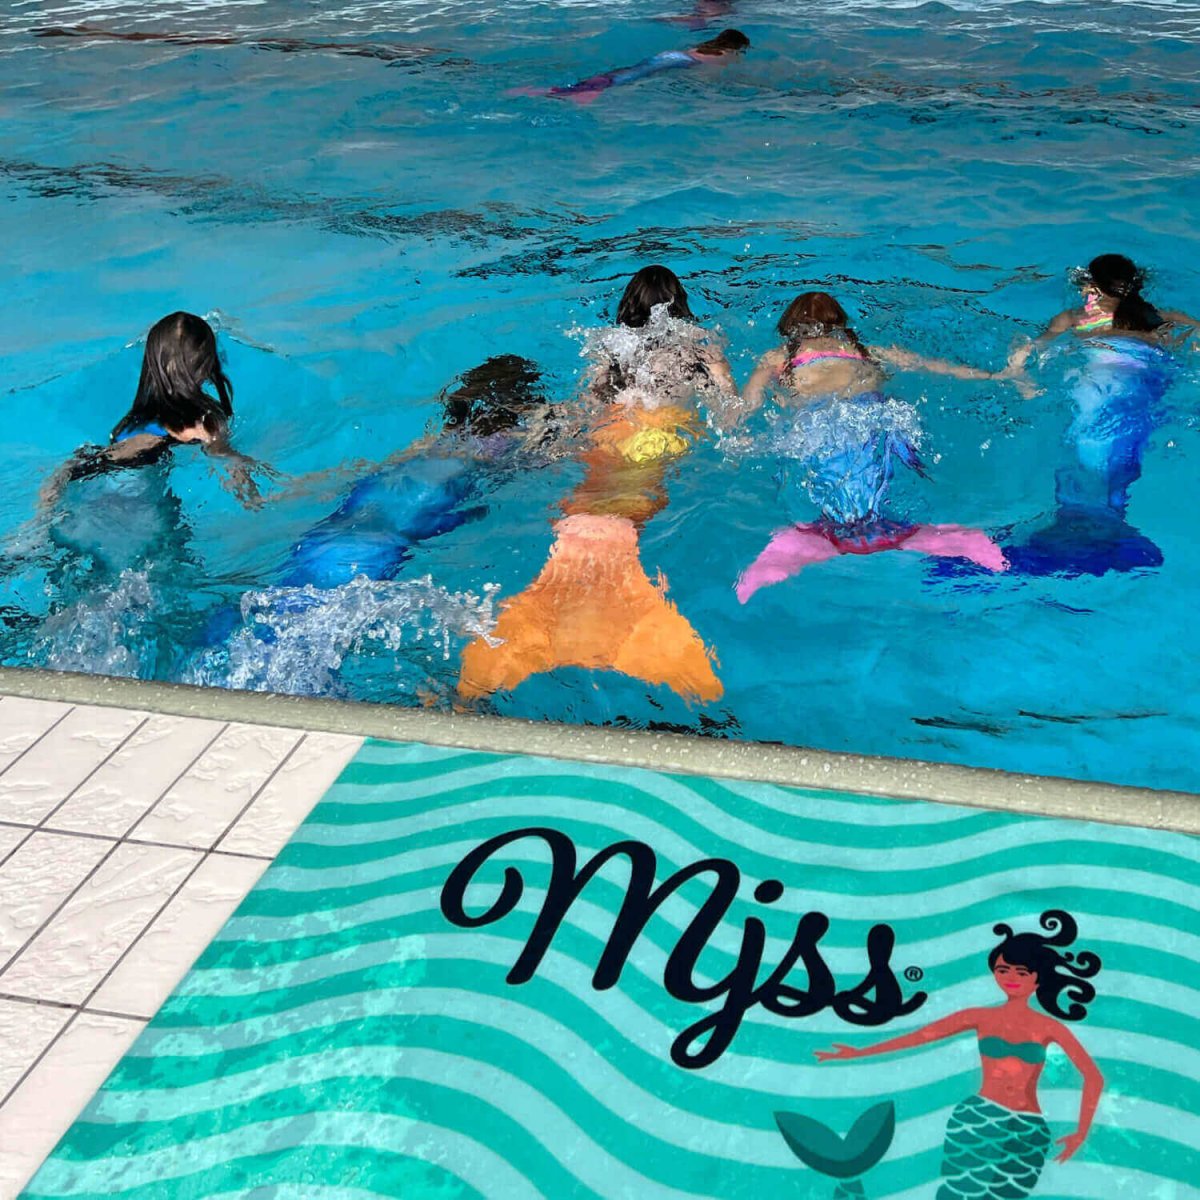 Settimana di gioco bambini: Corsi di nuoto sirena alla piscina coperta di Wurmsbach - Settimana bambini: Corsi di nuoto sirena in Wurmsbach